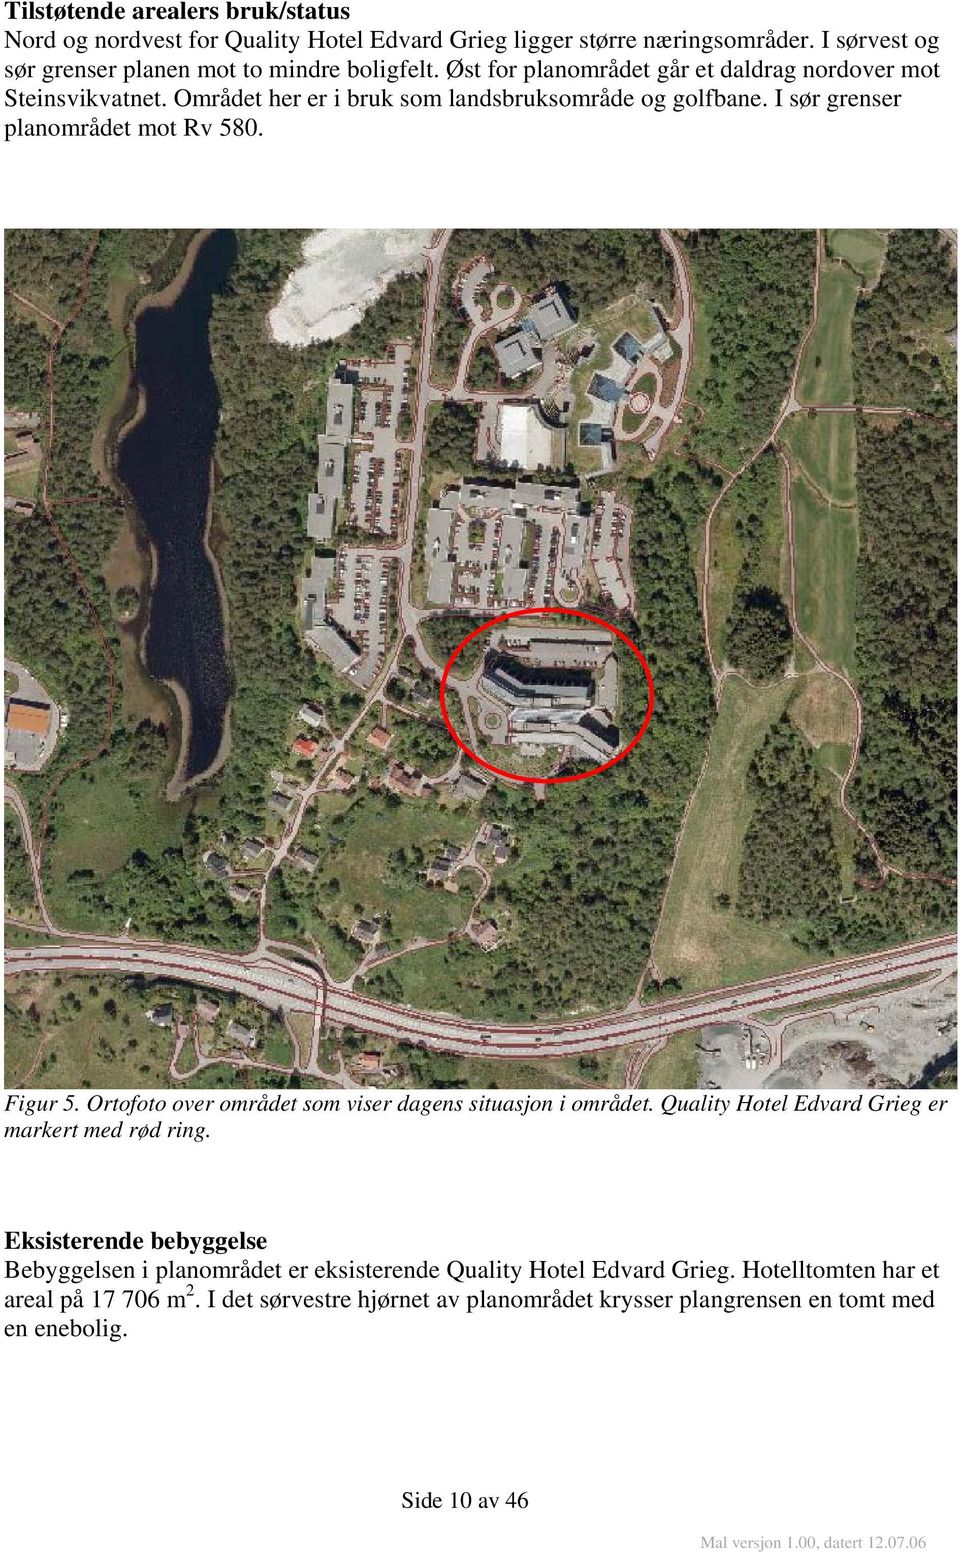 Ortofoto over området som viser dagens situasjon i området. Quality Hotel Edvard Grieg er markert med rød ring.